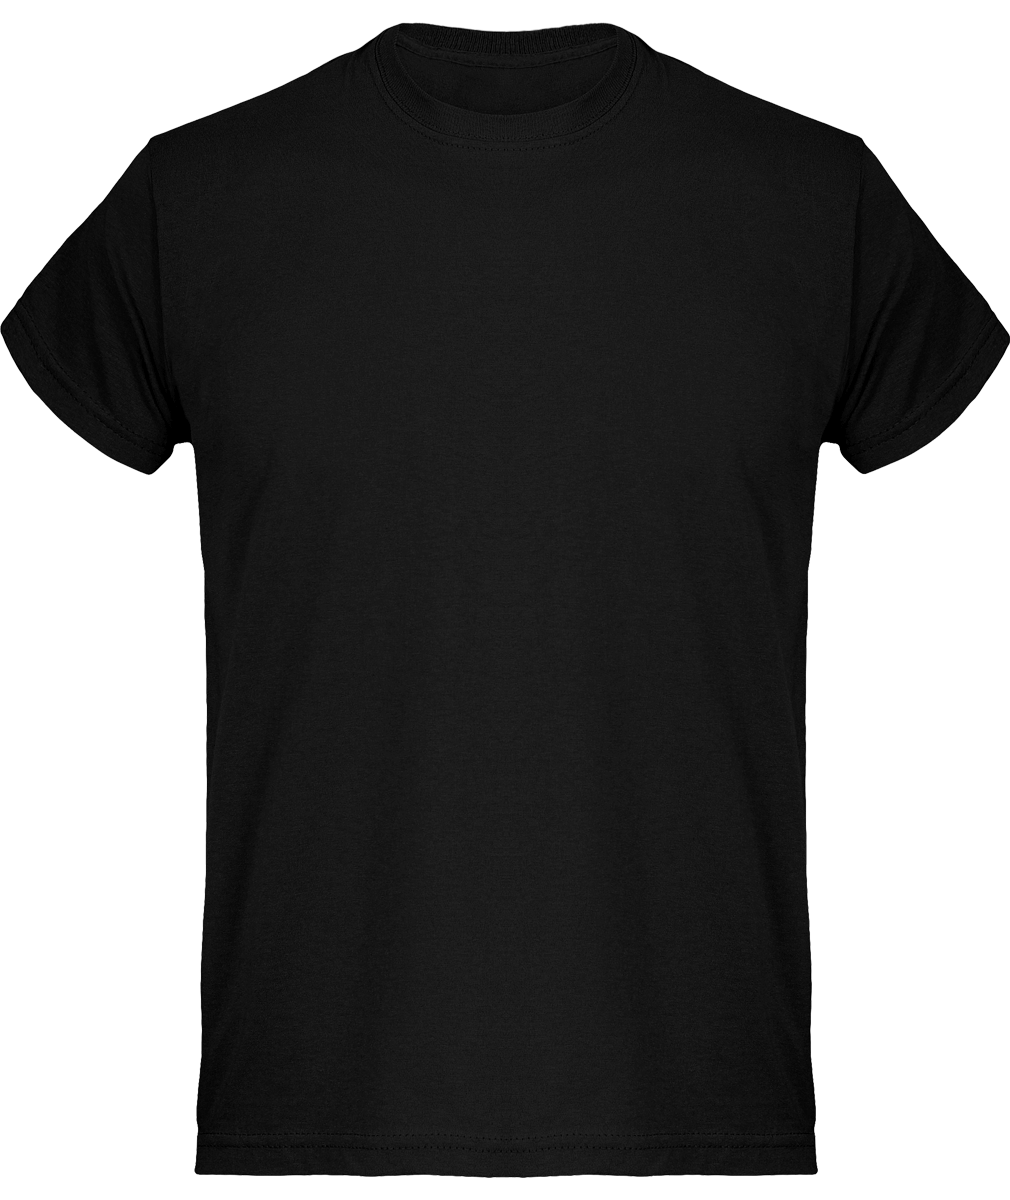 Camiseta Básica De Algodón Para Hombres, Ideal Para Personalización Black